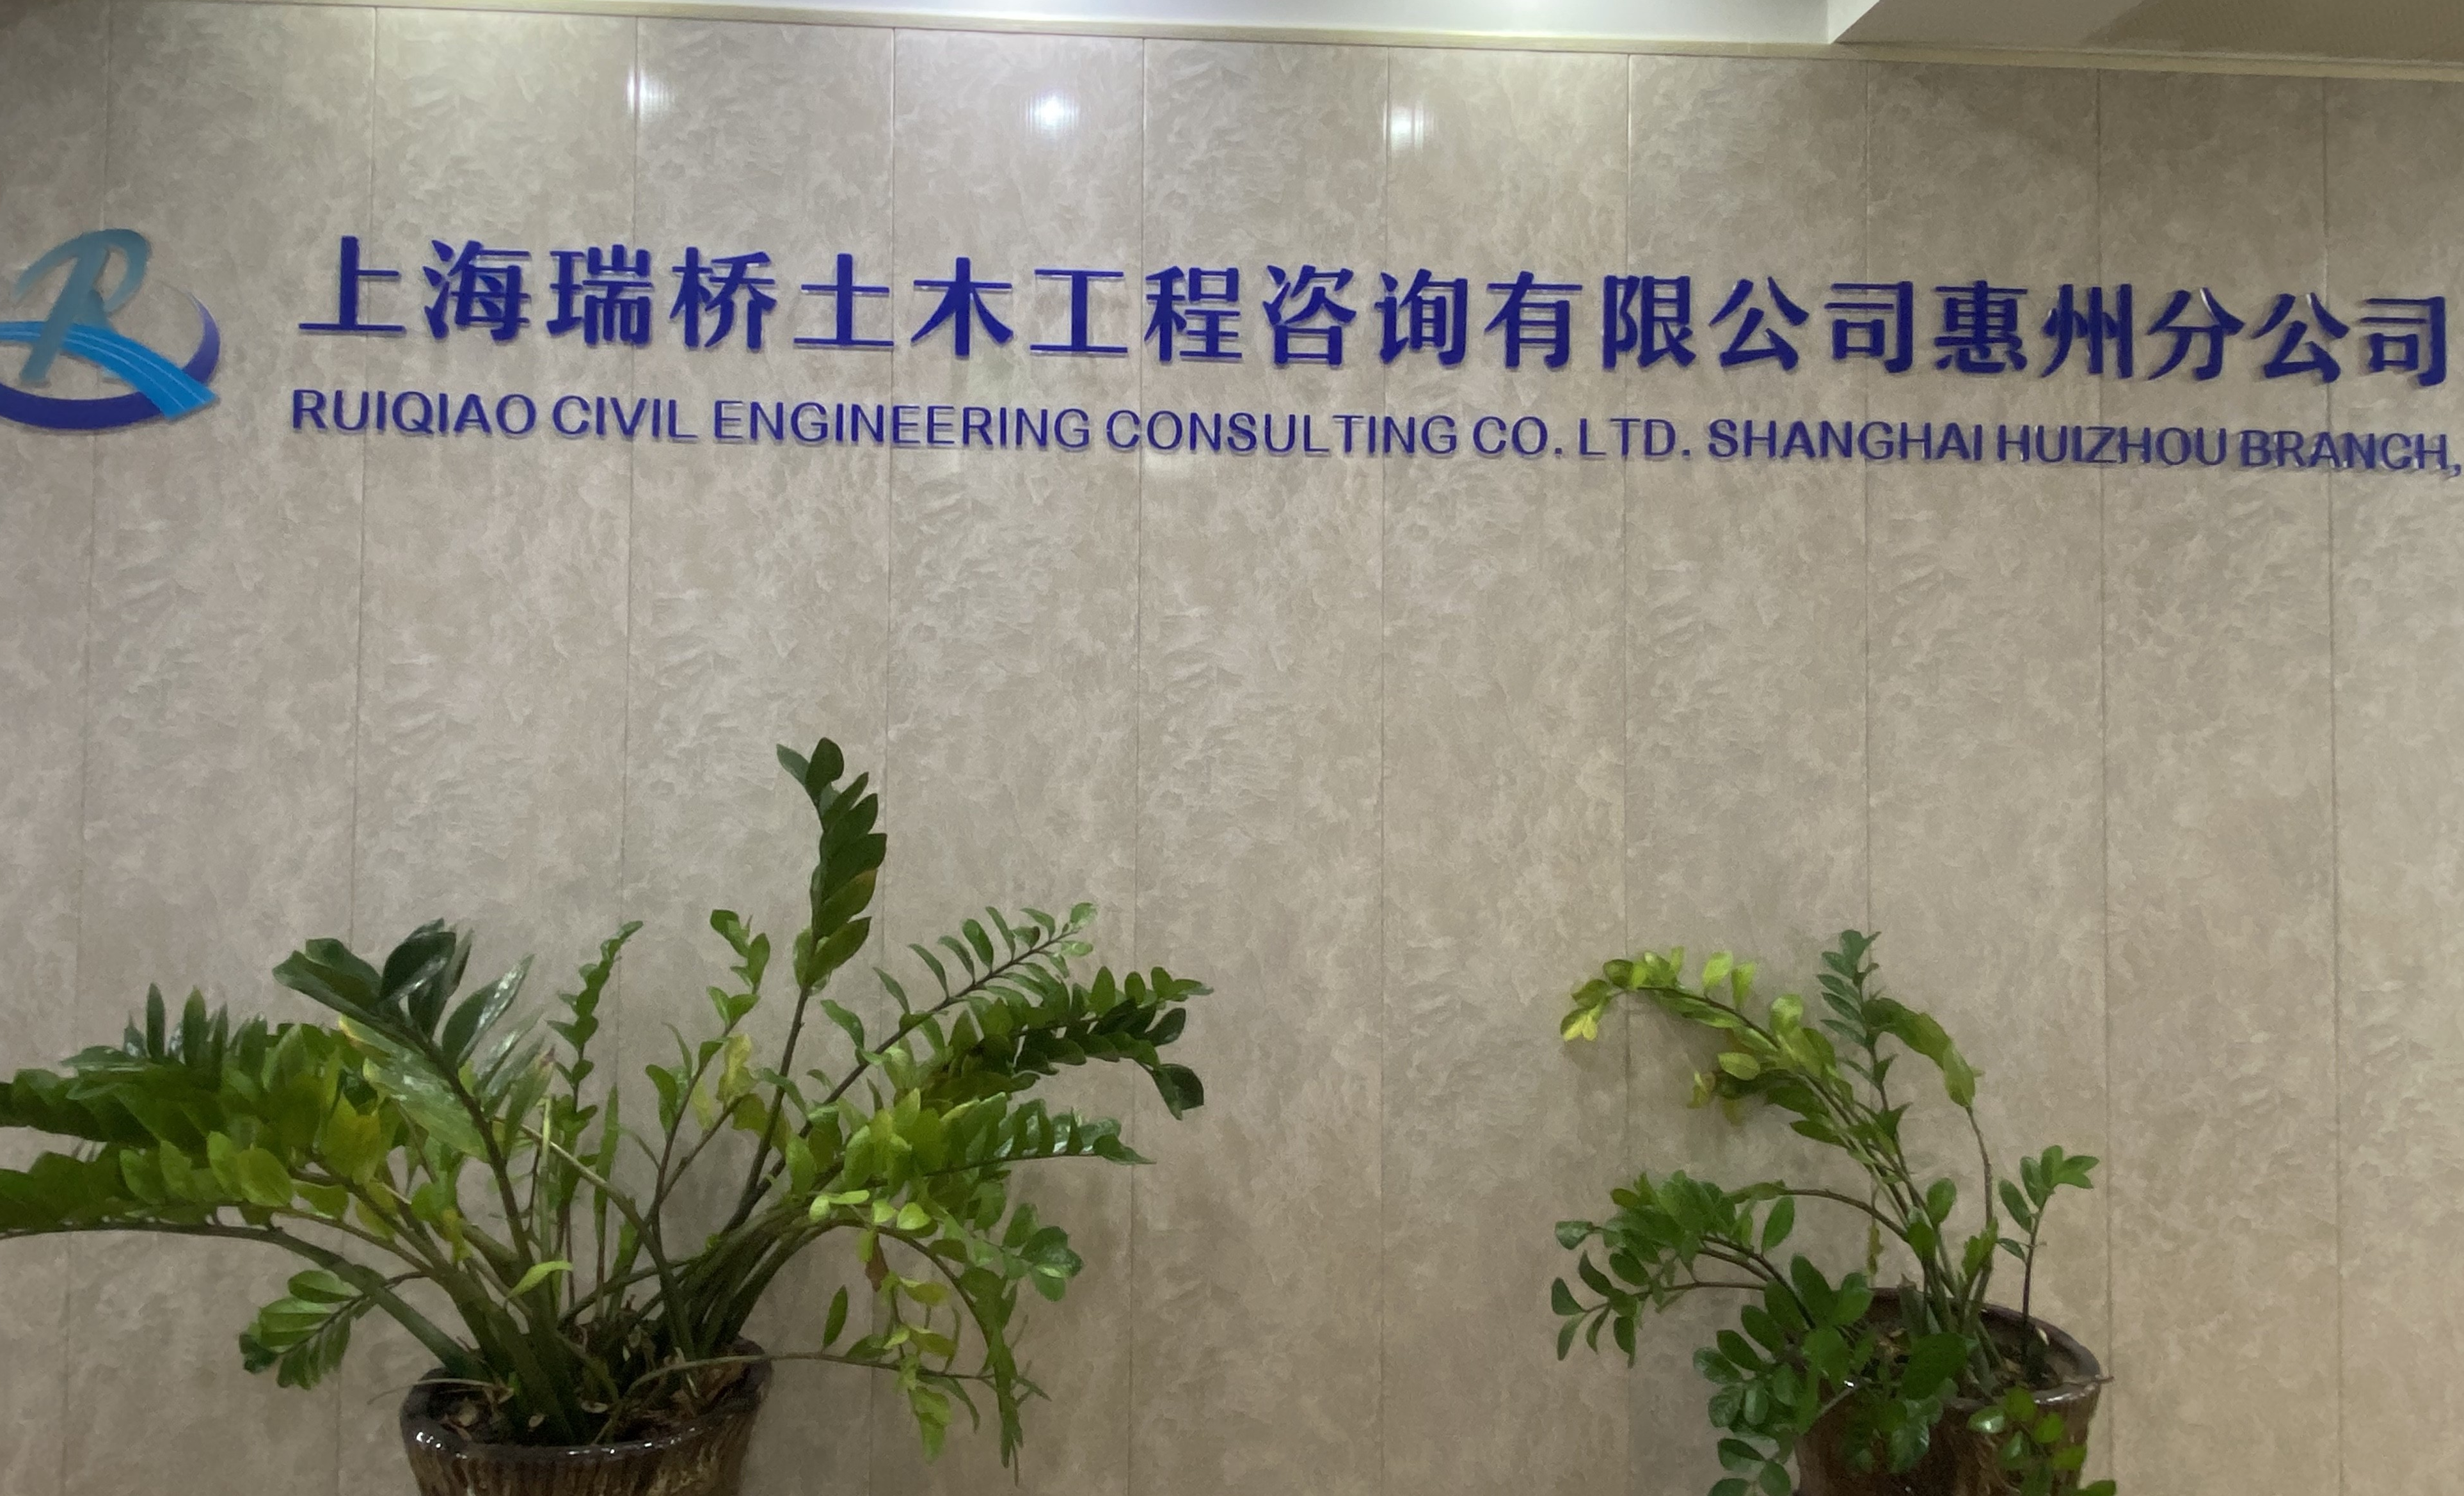 上海瑞橋土木工程咨詢有限公司惠州分公司最新招聘信息